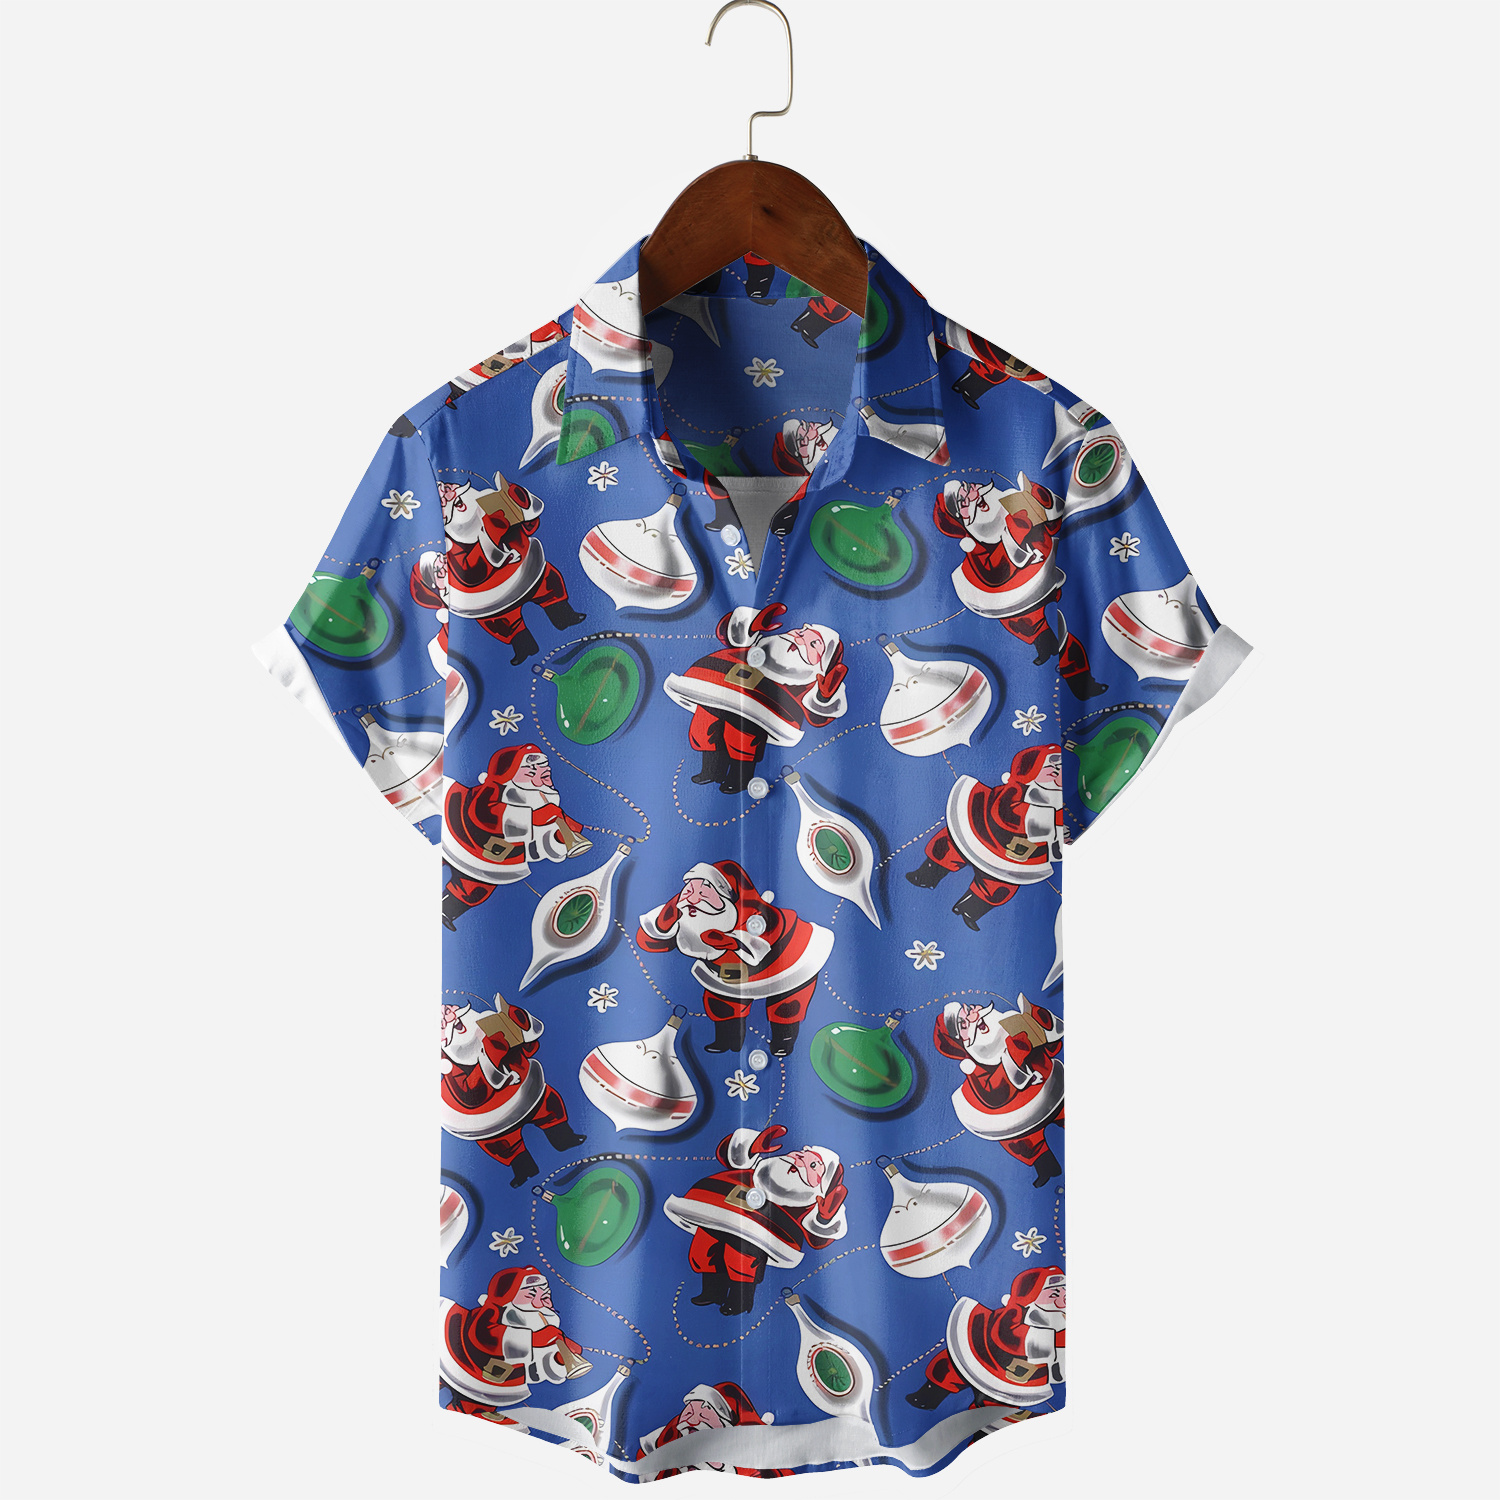 Singing Santa Claus Printing Short Sleeve Casual Shirt